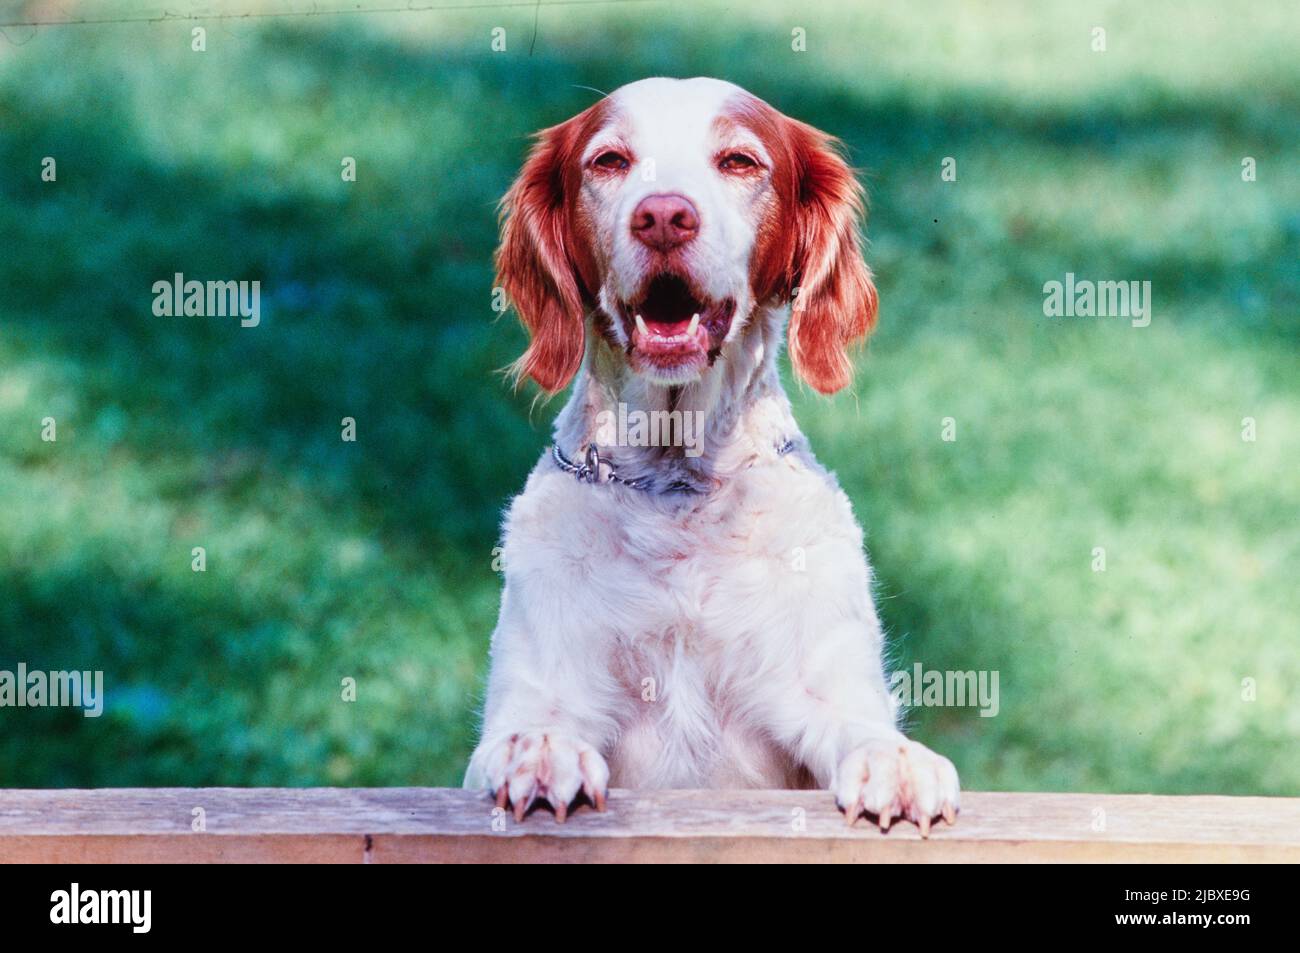 Ein bretonischer Hund, der mit seinen Pfoten auf einer Schiene sitzt Stockfoto